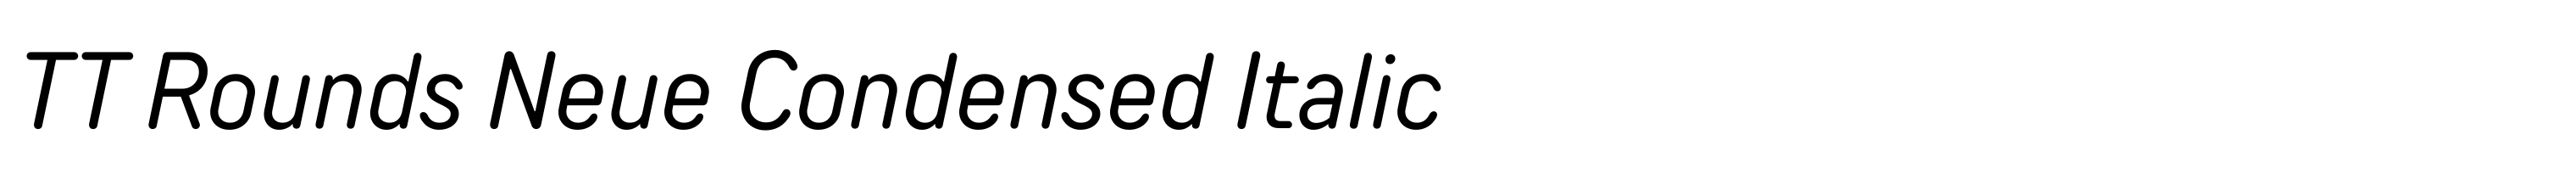 TT Rounds Neue Condensed Italic